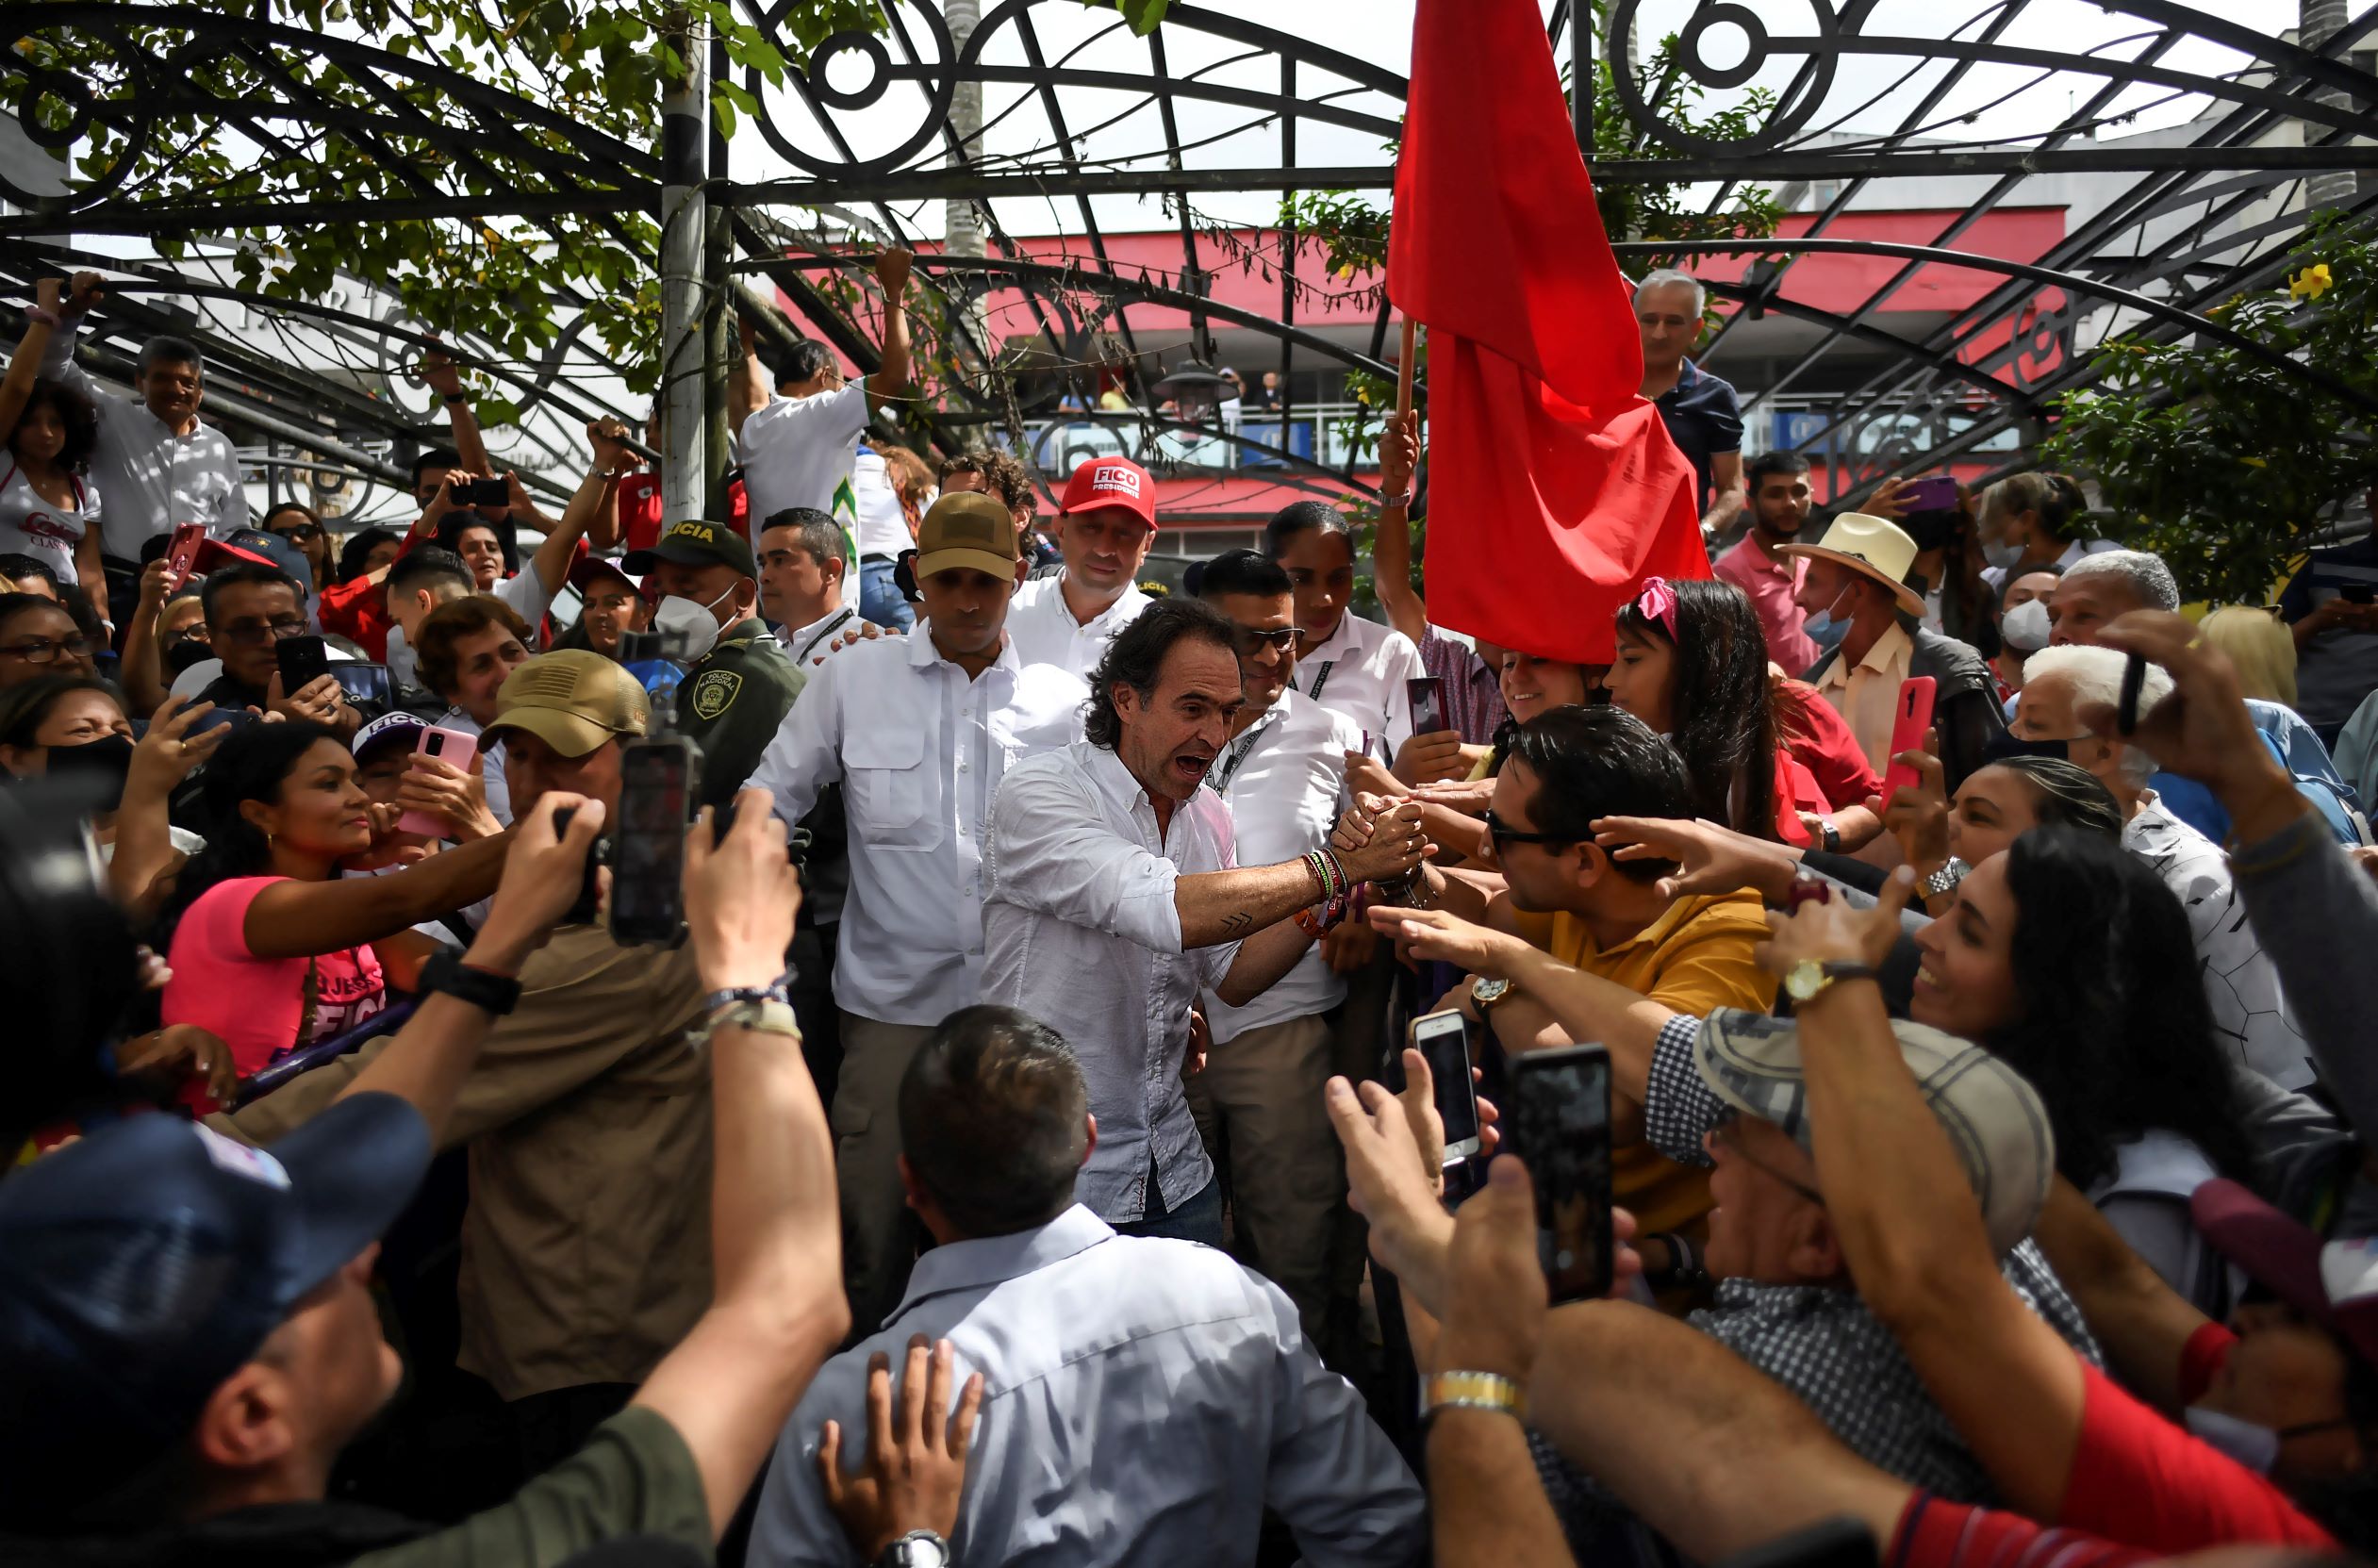 Quiero en Colombia un "Estado fuerte" contra "los criminales", dice candidato Gutiérrez